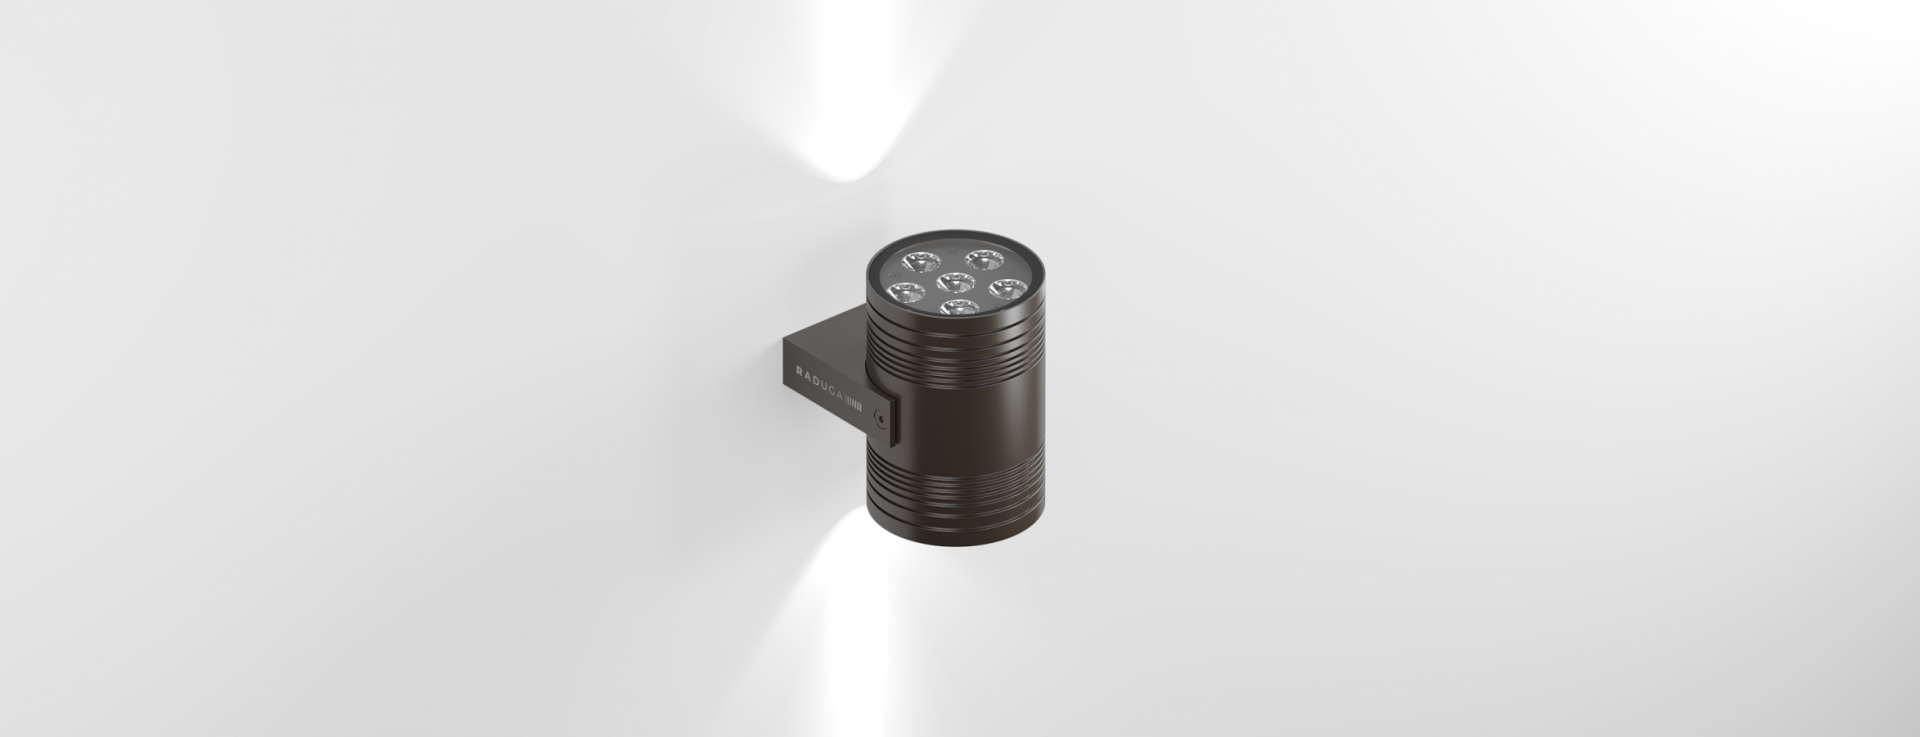 Купить двунаправленный прожектор DUPLEX.  Двунаправленный  архитектурный светильник  IP67 - Купить прожектор светодиодный LED.  Прожектор архитектурный на фасад бренда RADUGA.